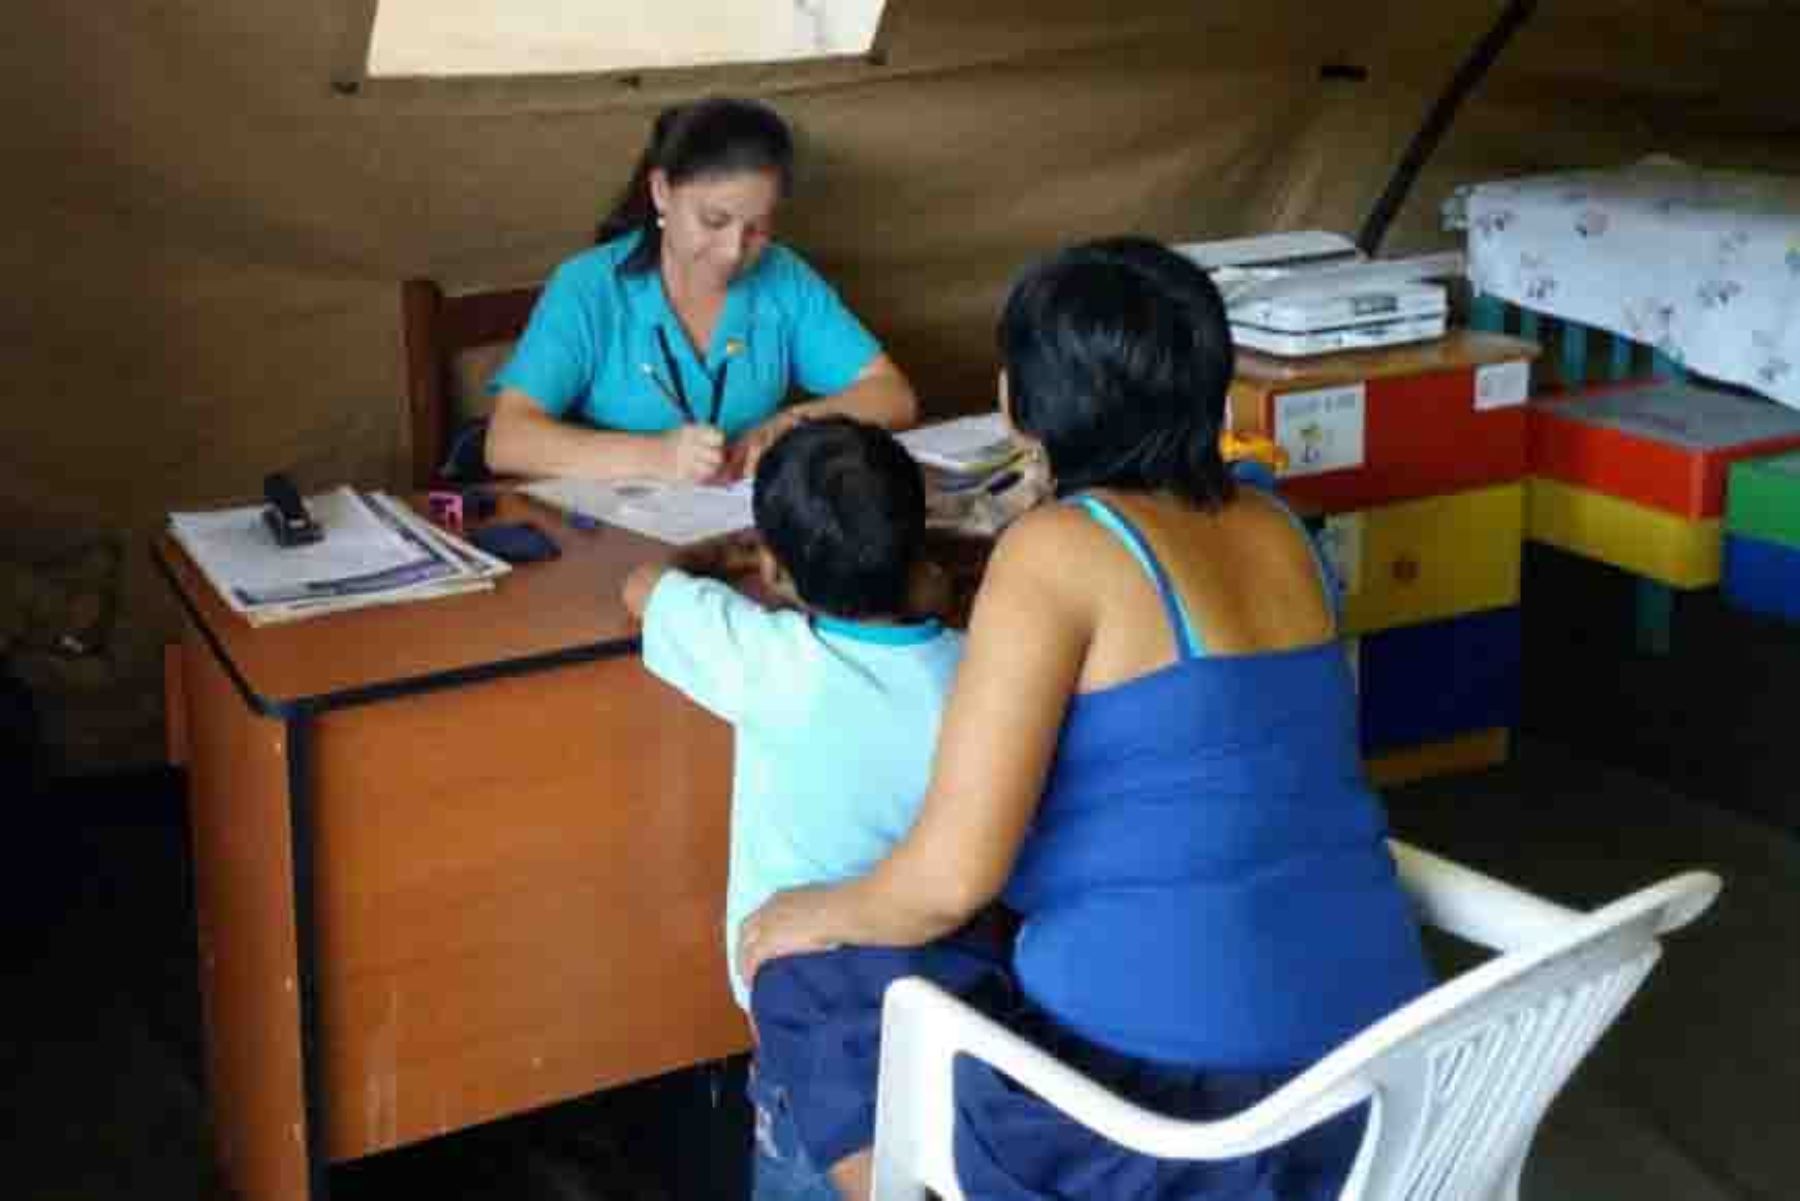 Cuatro casos confirmados de varicela se reportaron hoy en la región Lambayeque, por lo que la Gerencia Regional de Salud recomendó a la población medidas para hacer frente a esta enfermedad.